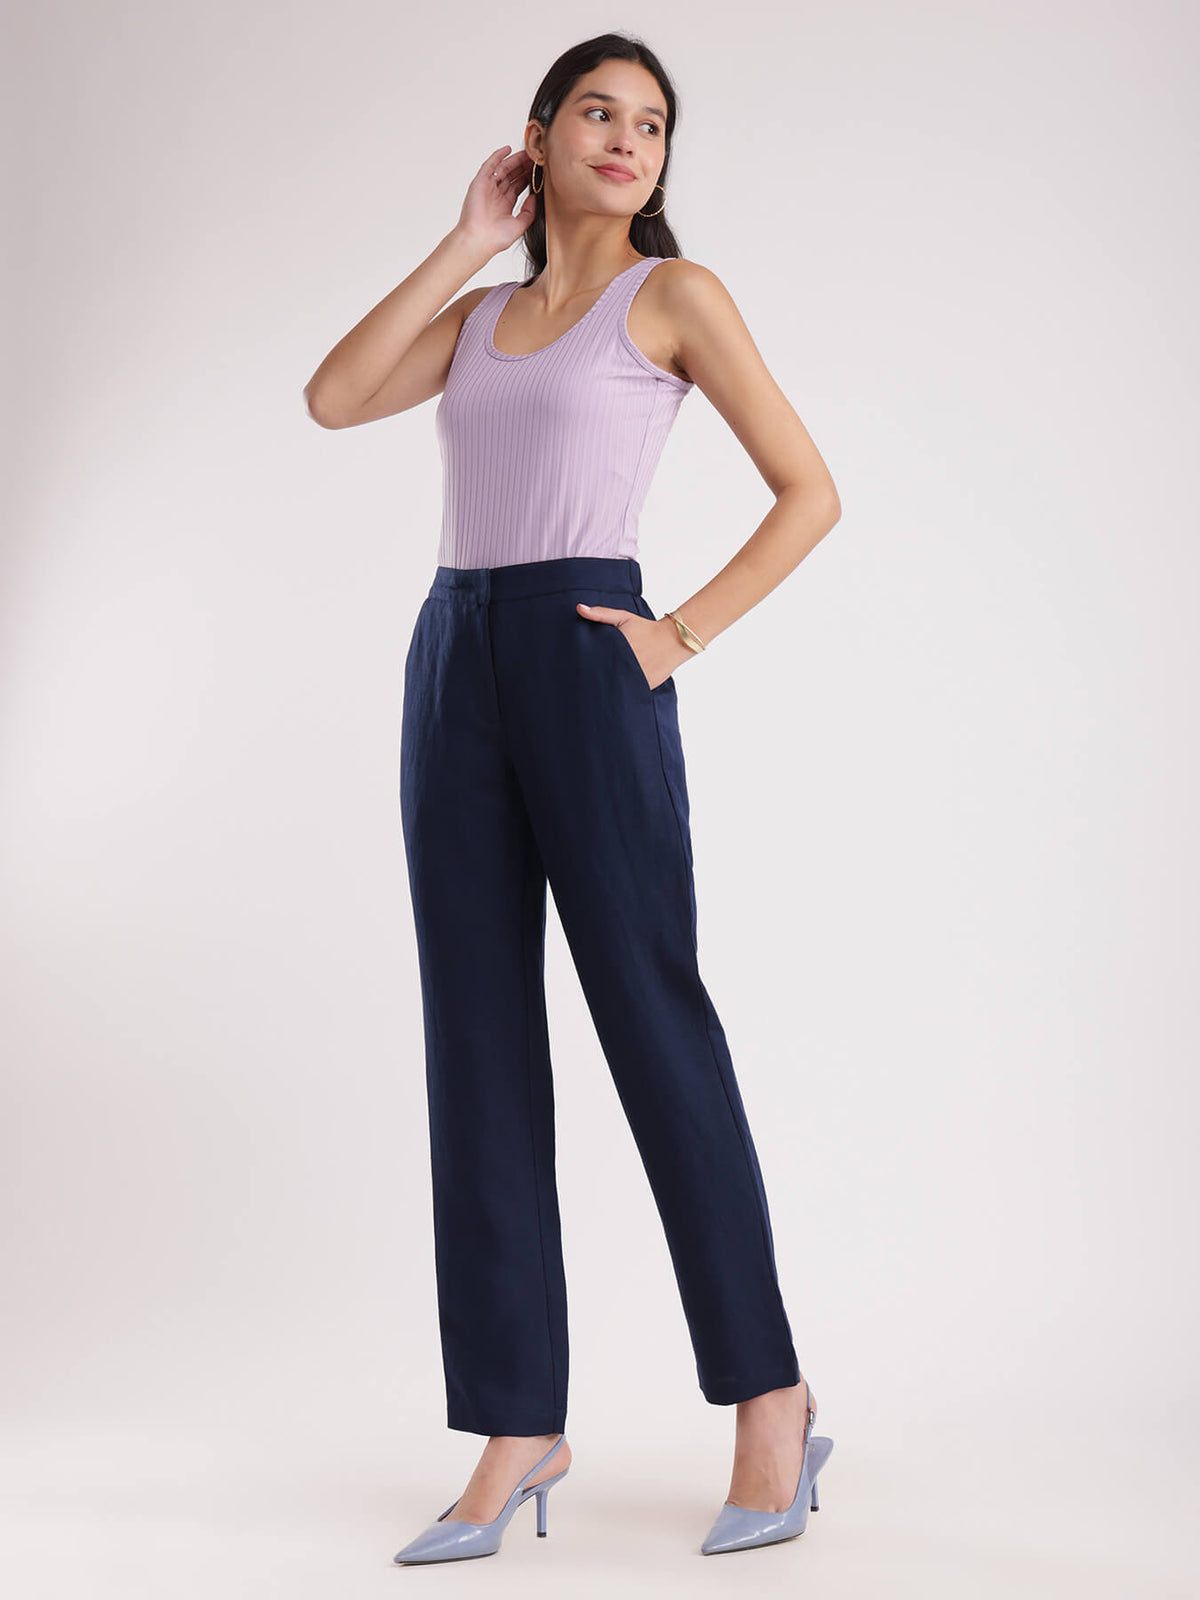 Linen Elasticated Straight Trouser - Navy Blue